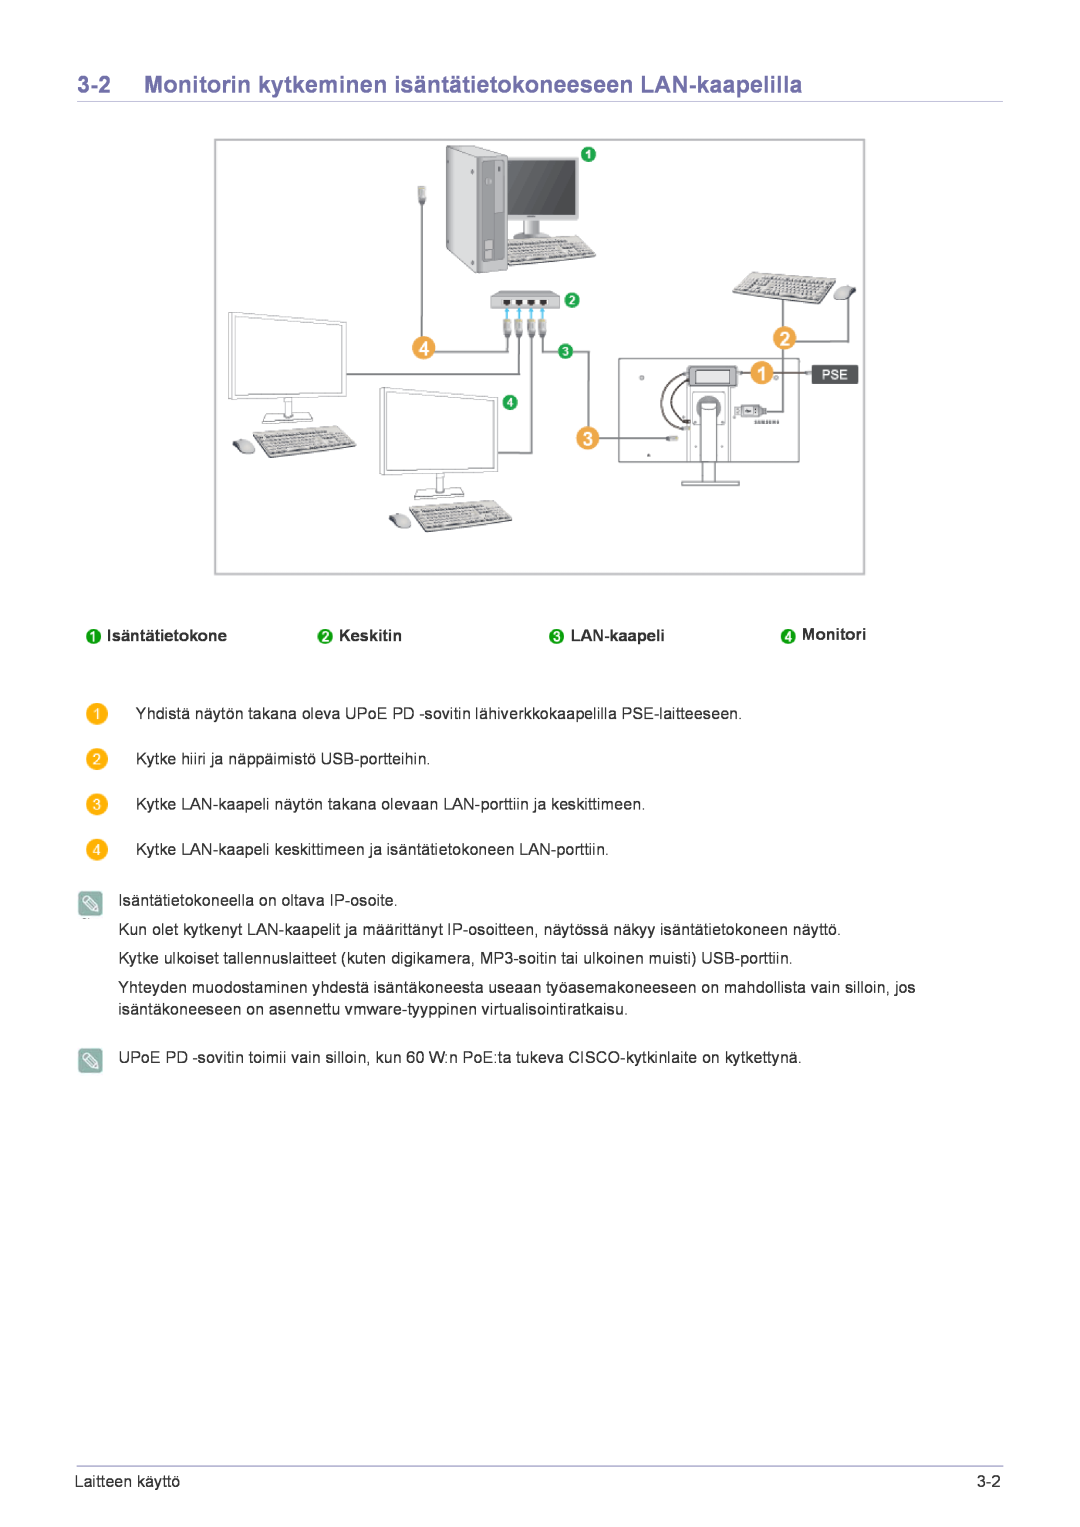 Samsung LF22NPBHBNP/EN manual Monitorin kytkeminen isäntätietokoneeseen LAN-kaapelilla, Isäntätietokone, Keskitin 